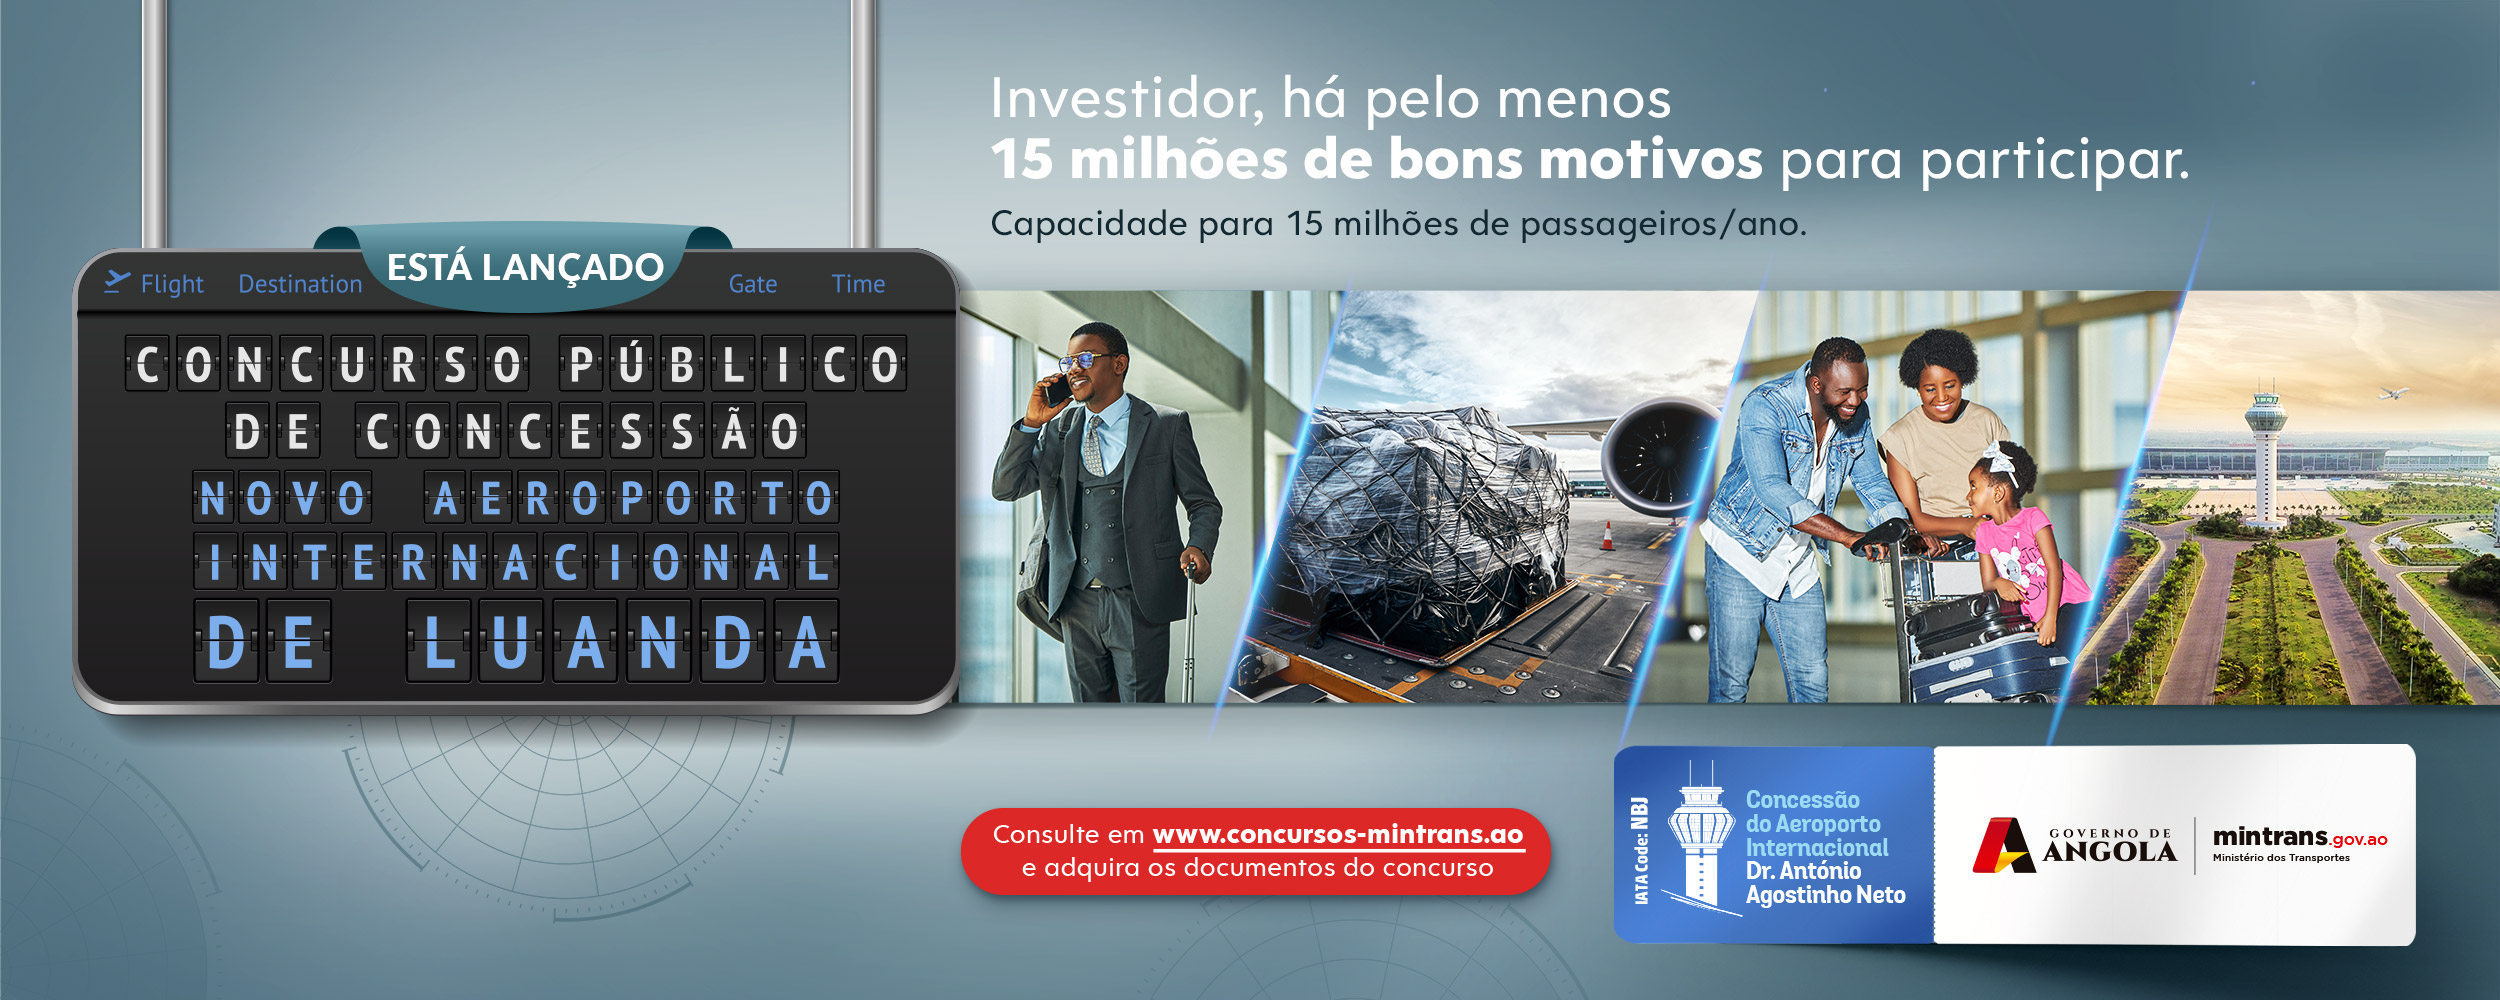 Concurso Público Internacional para a Concessão da Gestão, Exploração e Manutenção do Aeroporto Internacional Dr. António Agostinho Neto